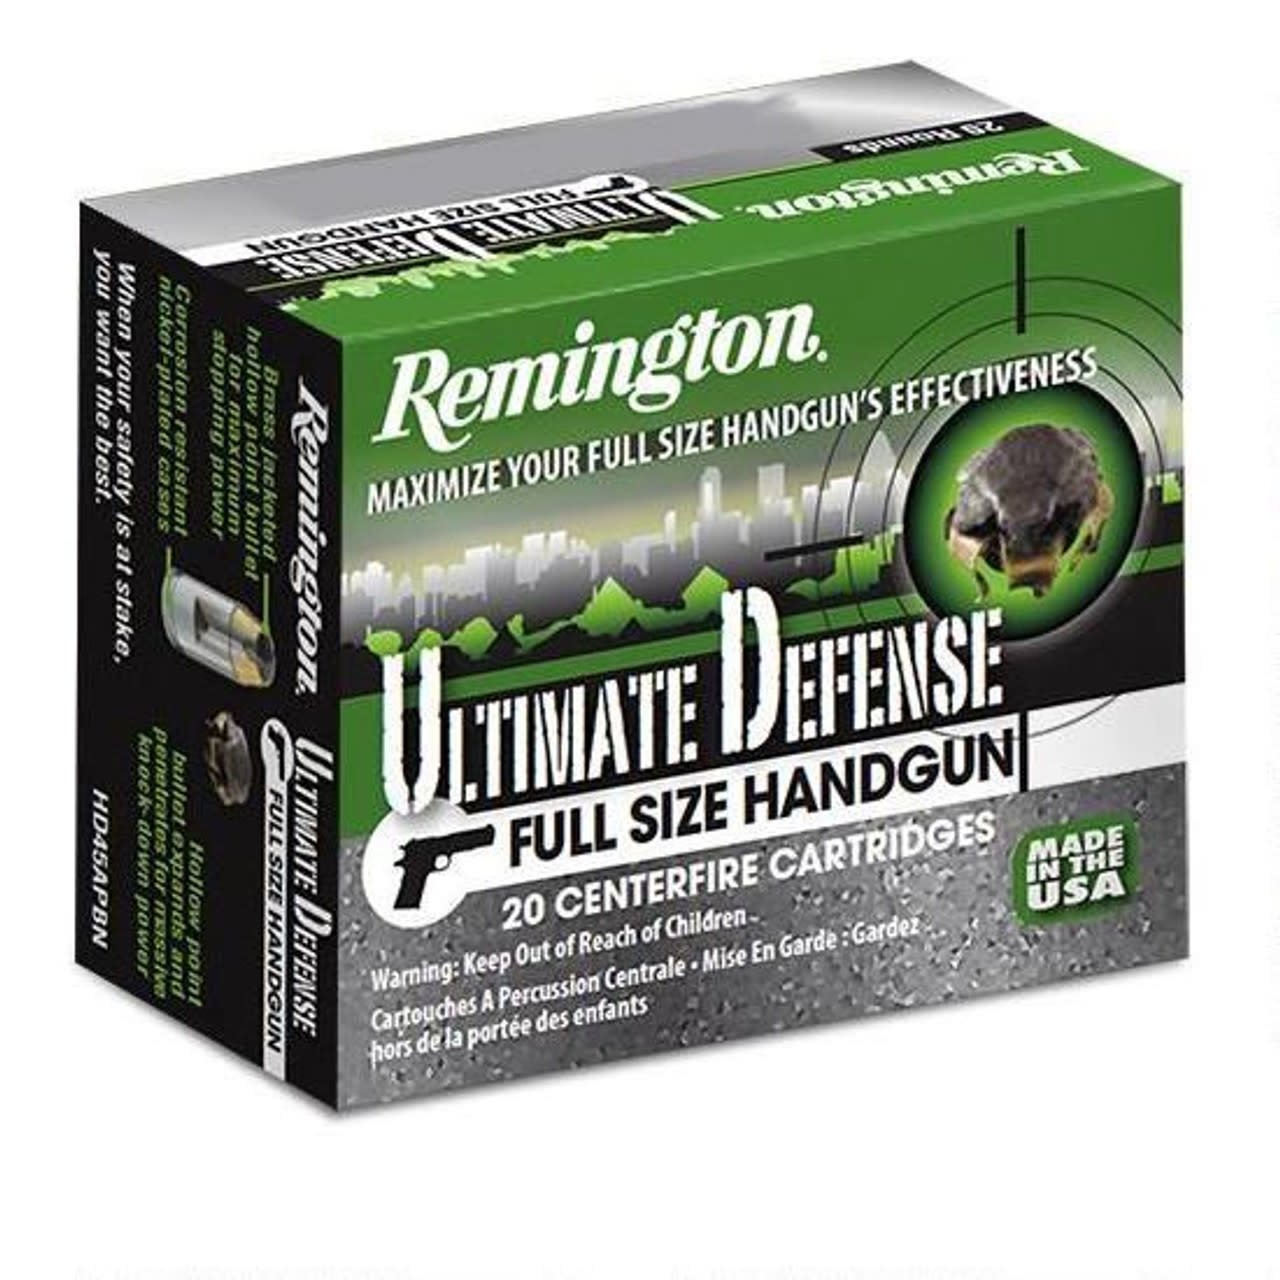 Remington Ultimate Defense Compact 357 MAG 125 Gr. Golden Saber BJHP 20 RND Box